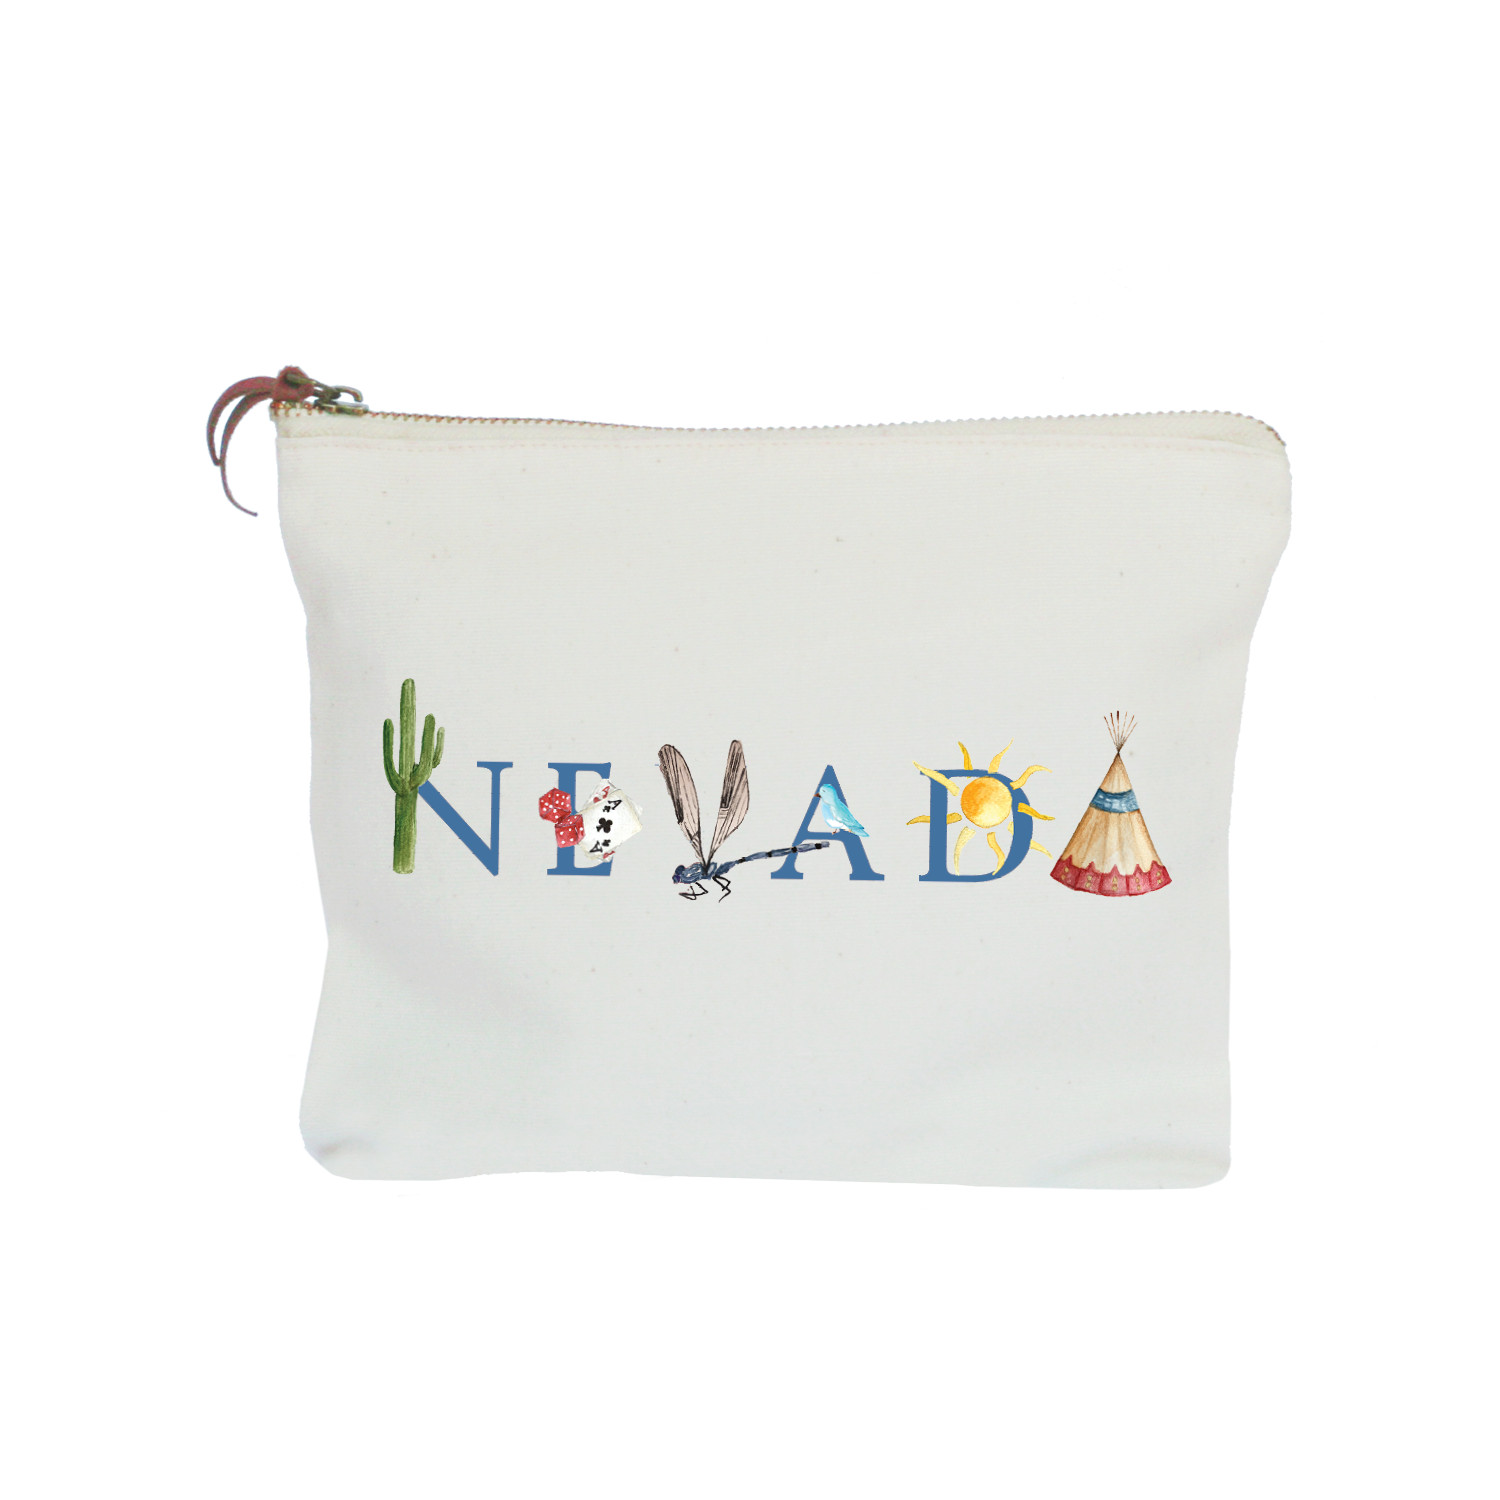 Nevada zipper pouch